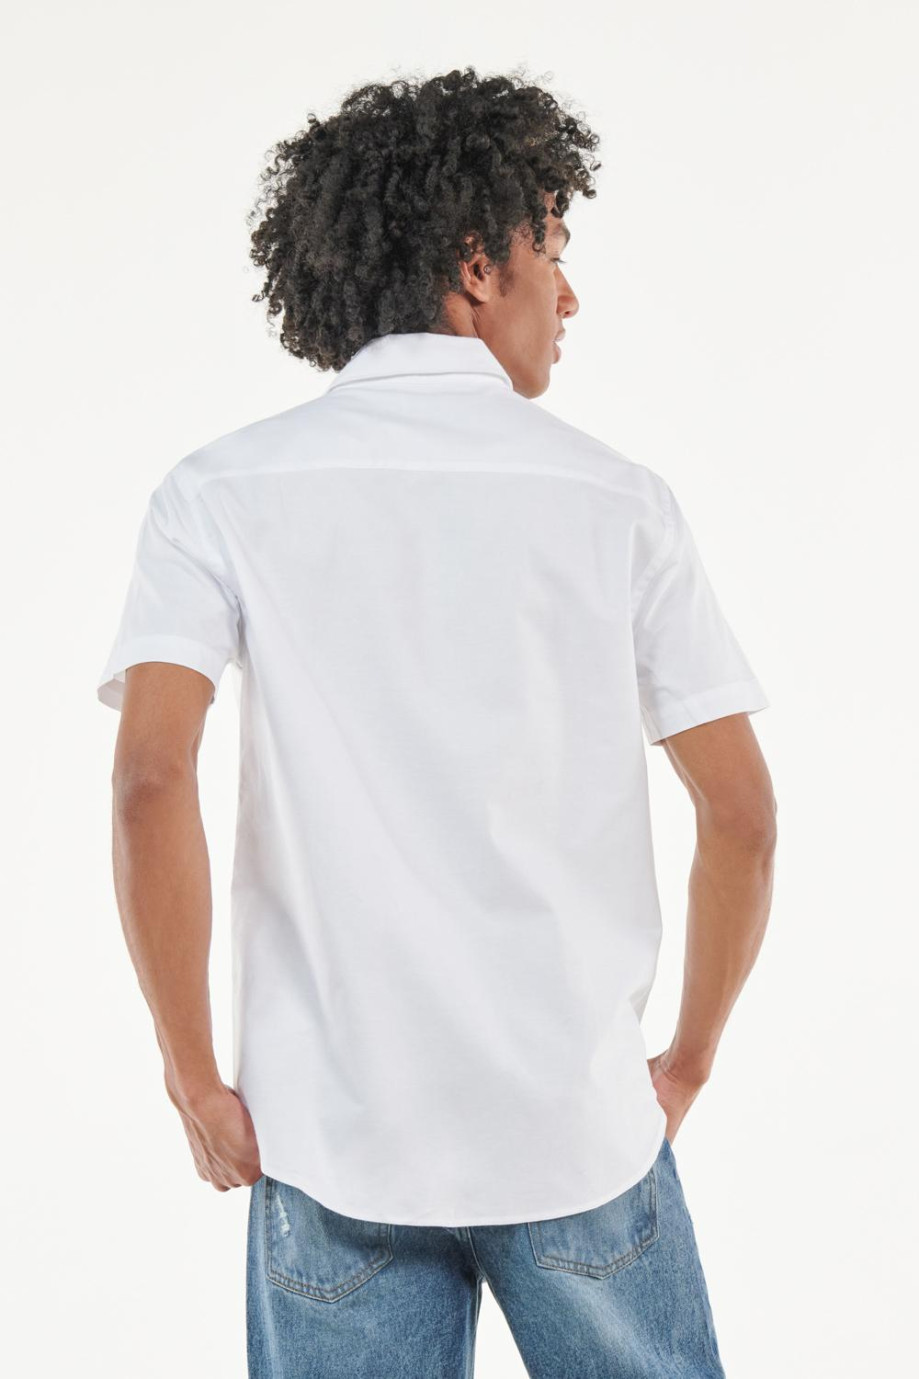 Camisa manga corta unicolor con cuello sport collar y bolsillo